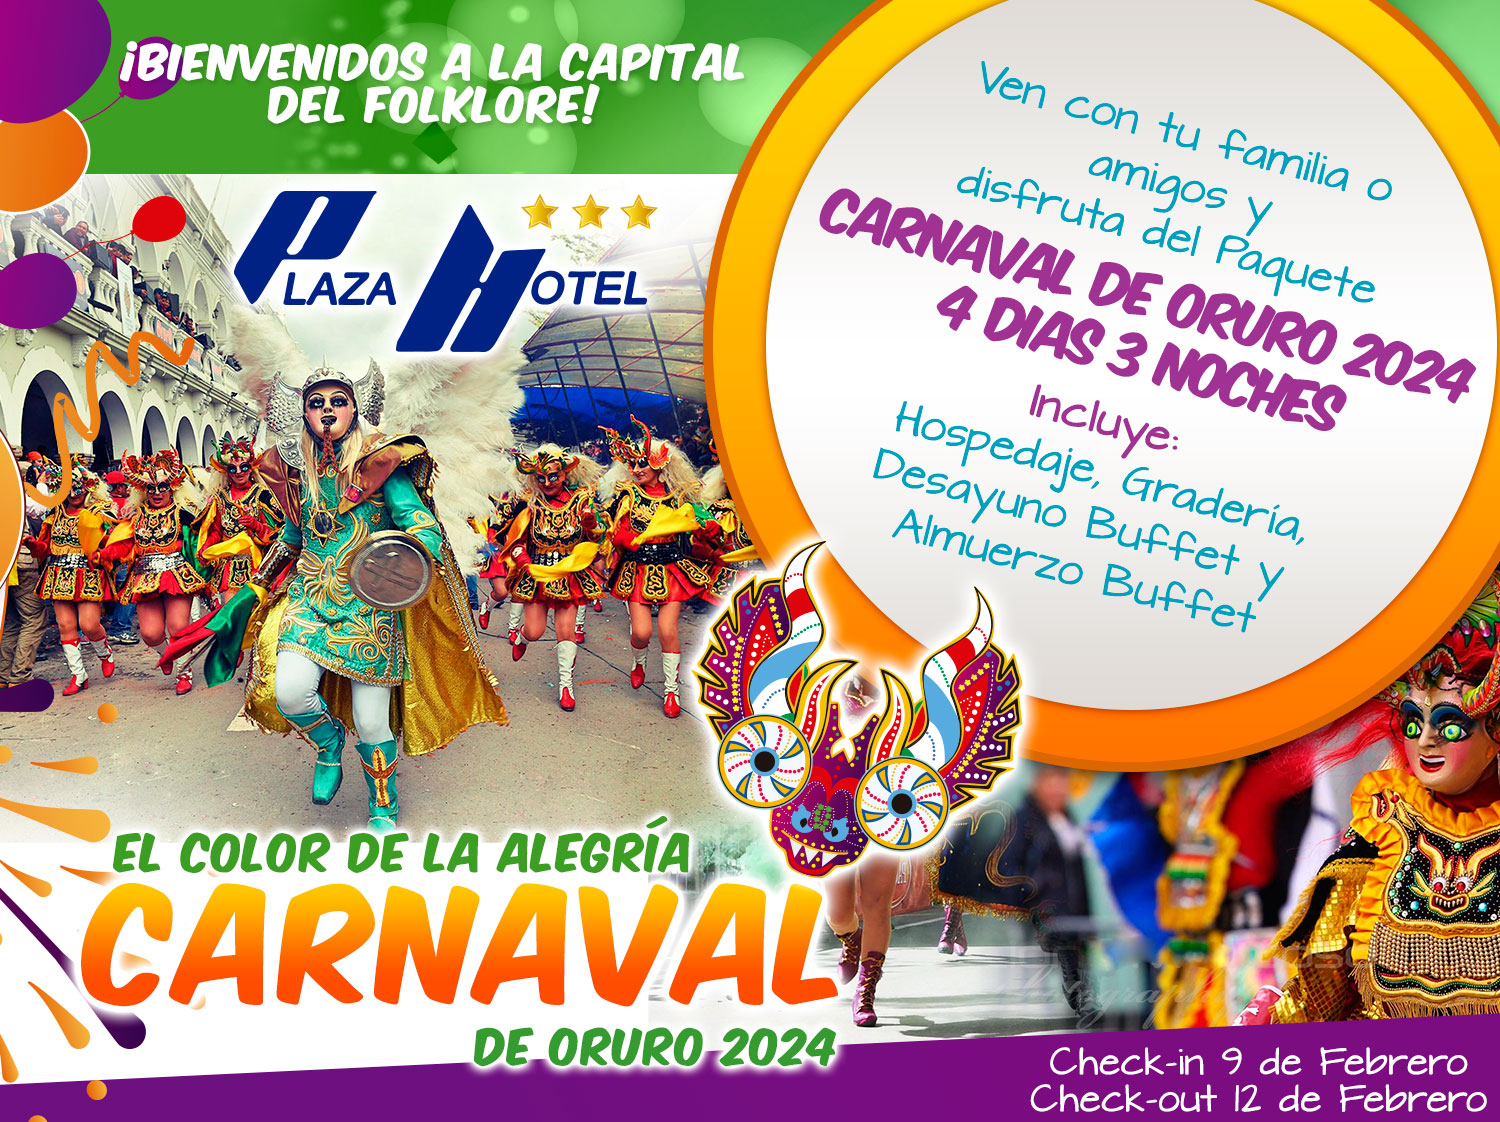 Carnaval de Oruro 2023, pasos a seguir